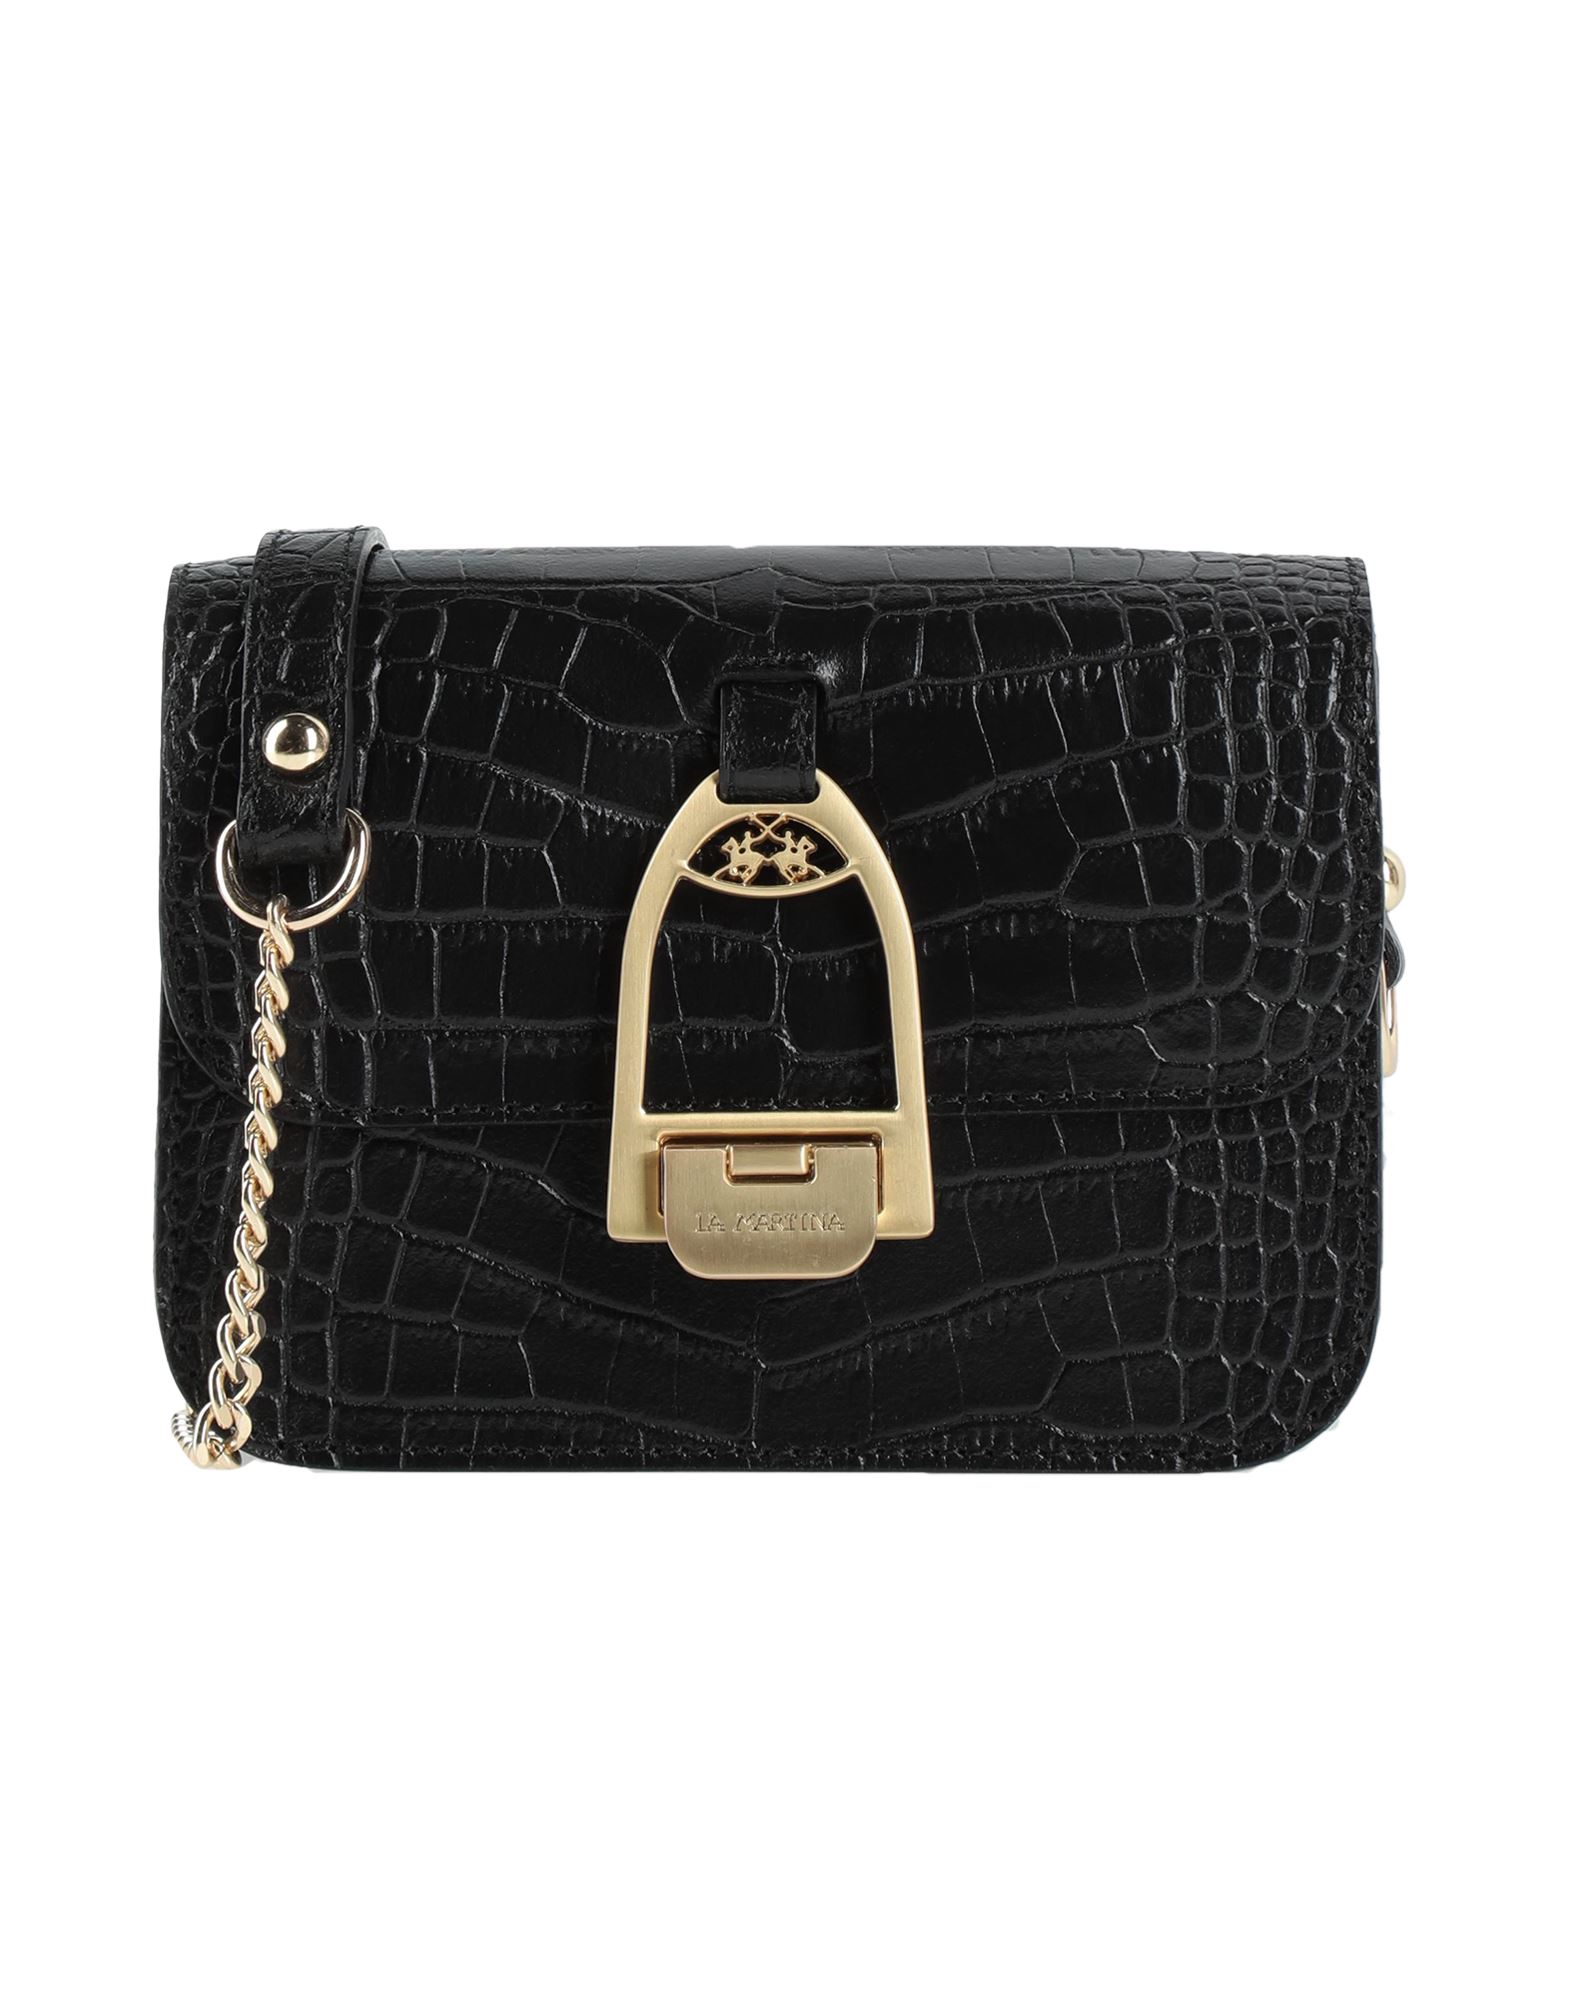 La Martina Handbags In Black